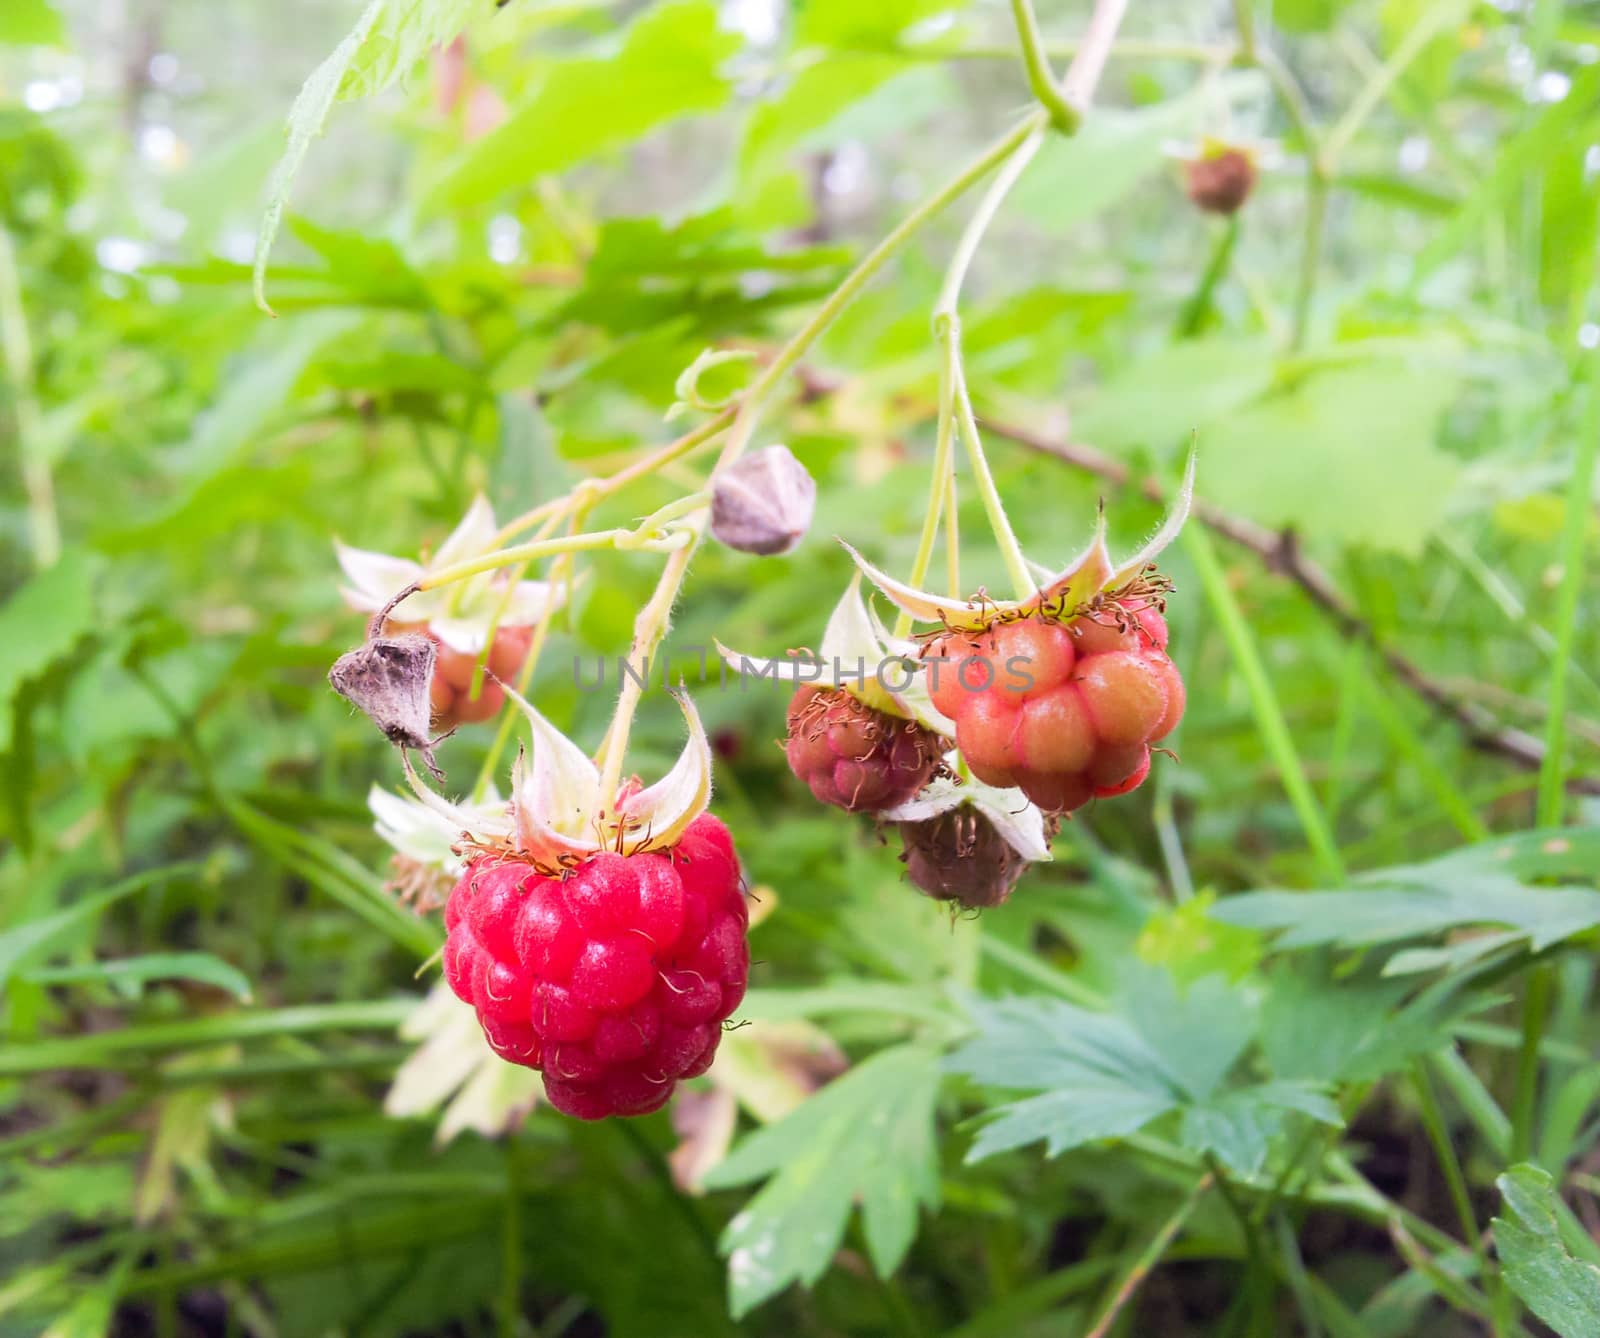 Raspberry on bush by Arvebettum